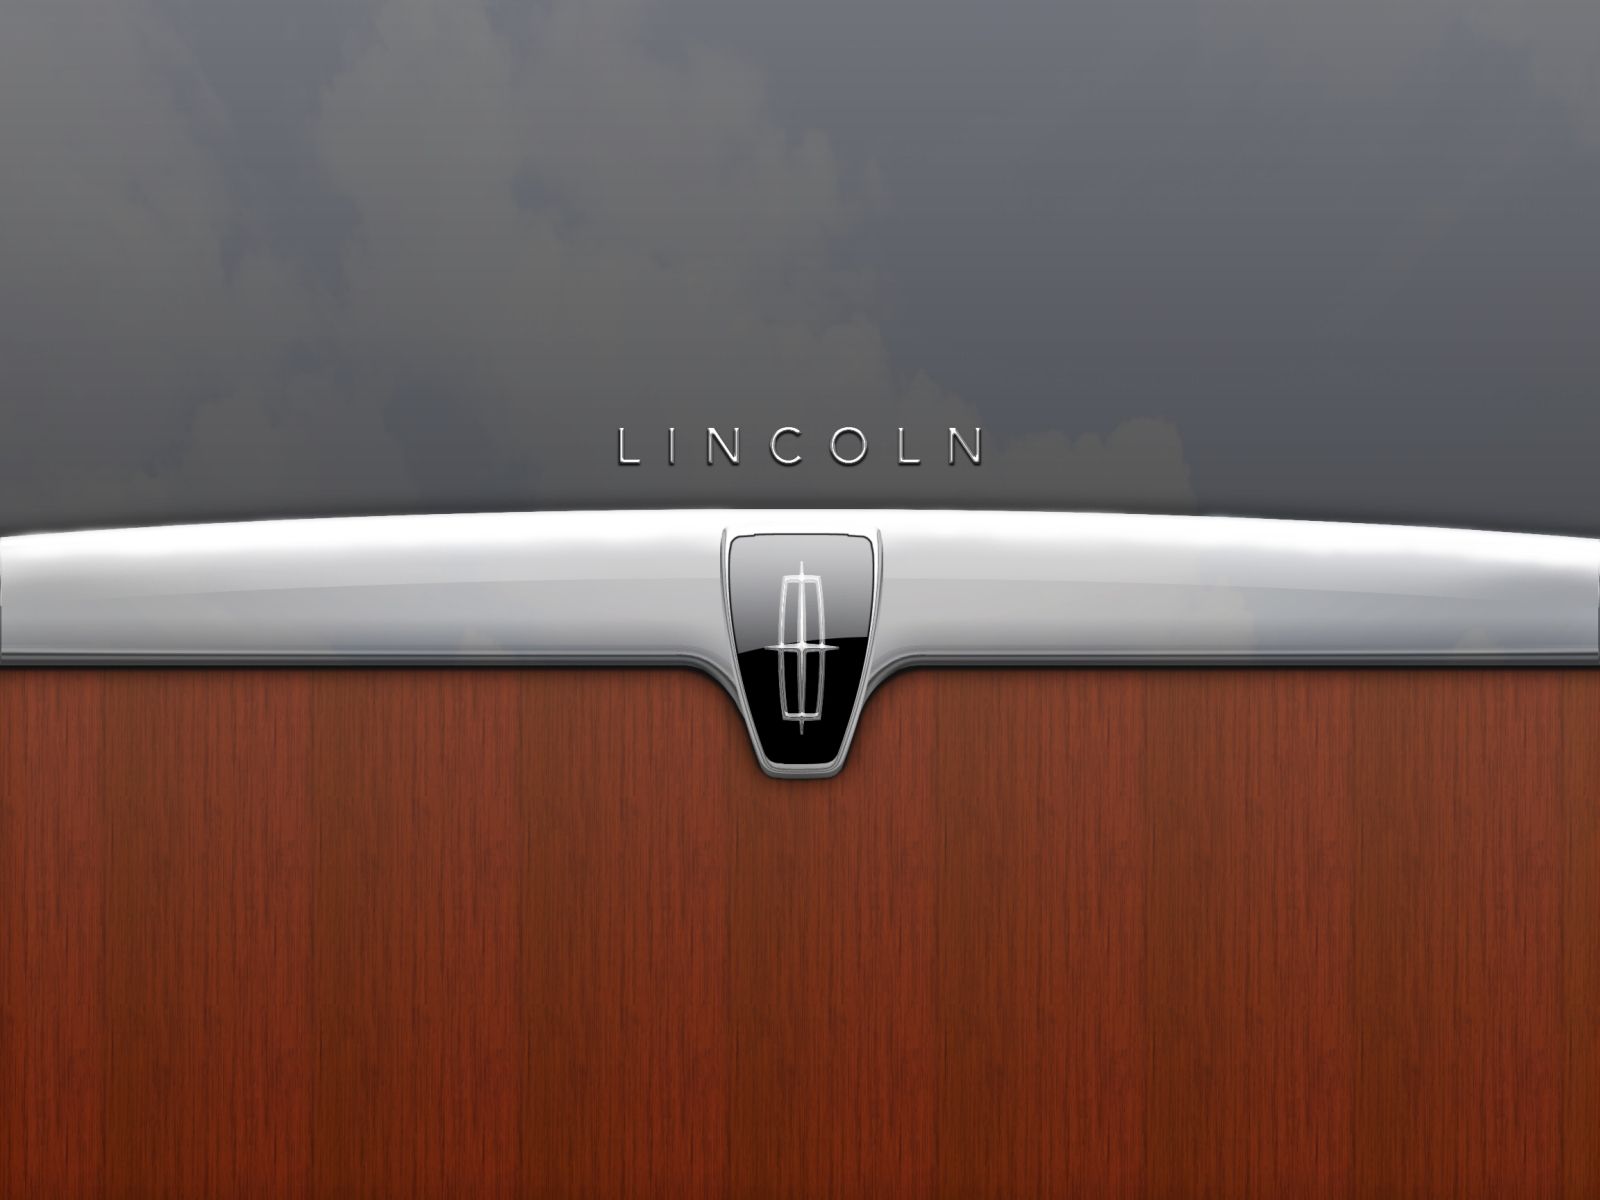 Lincoln Emblem wallpaper. Lincoln Emblem